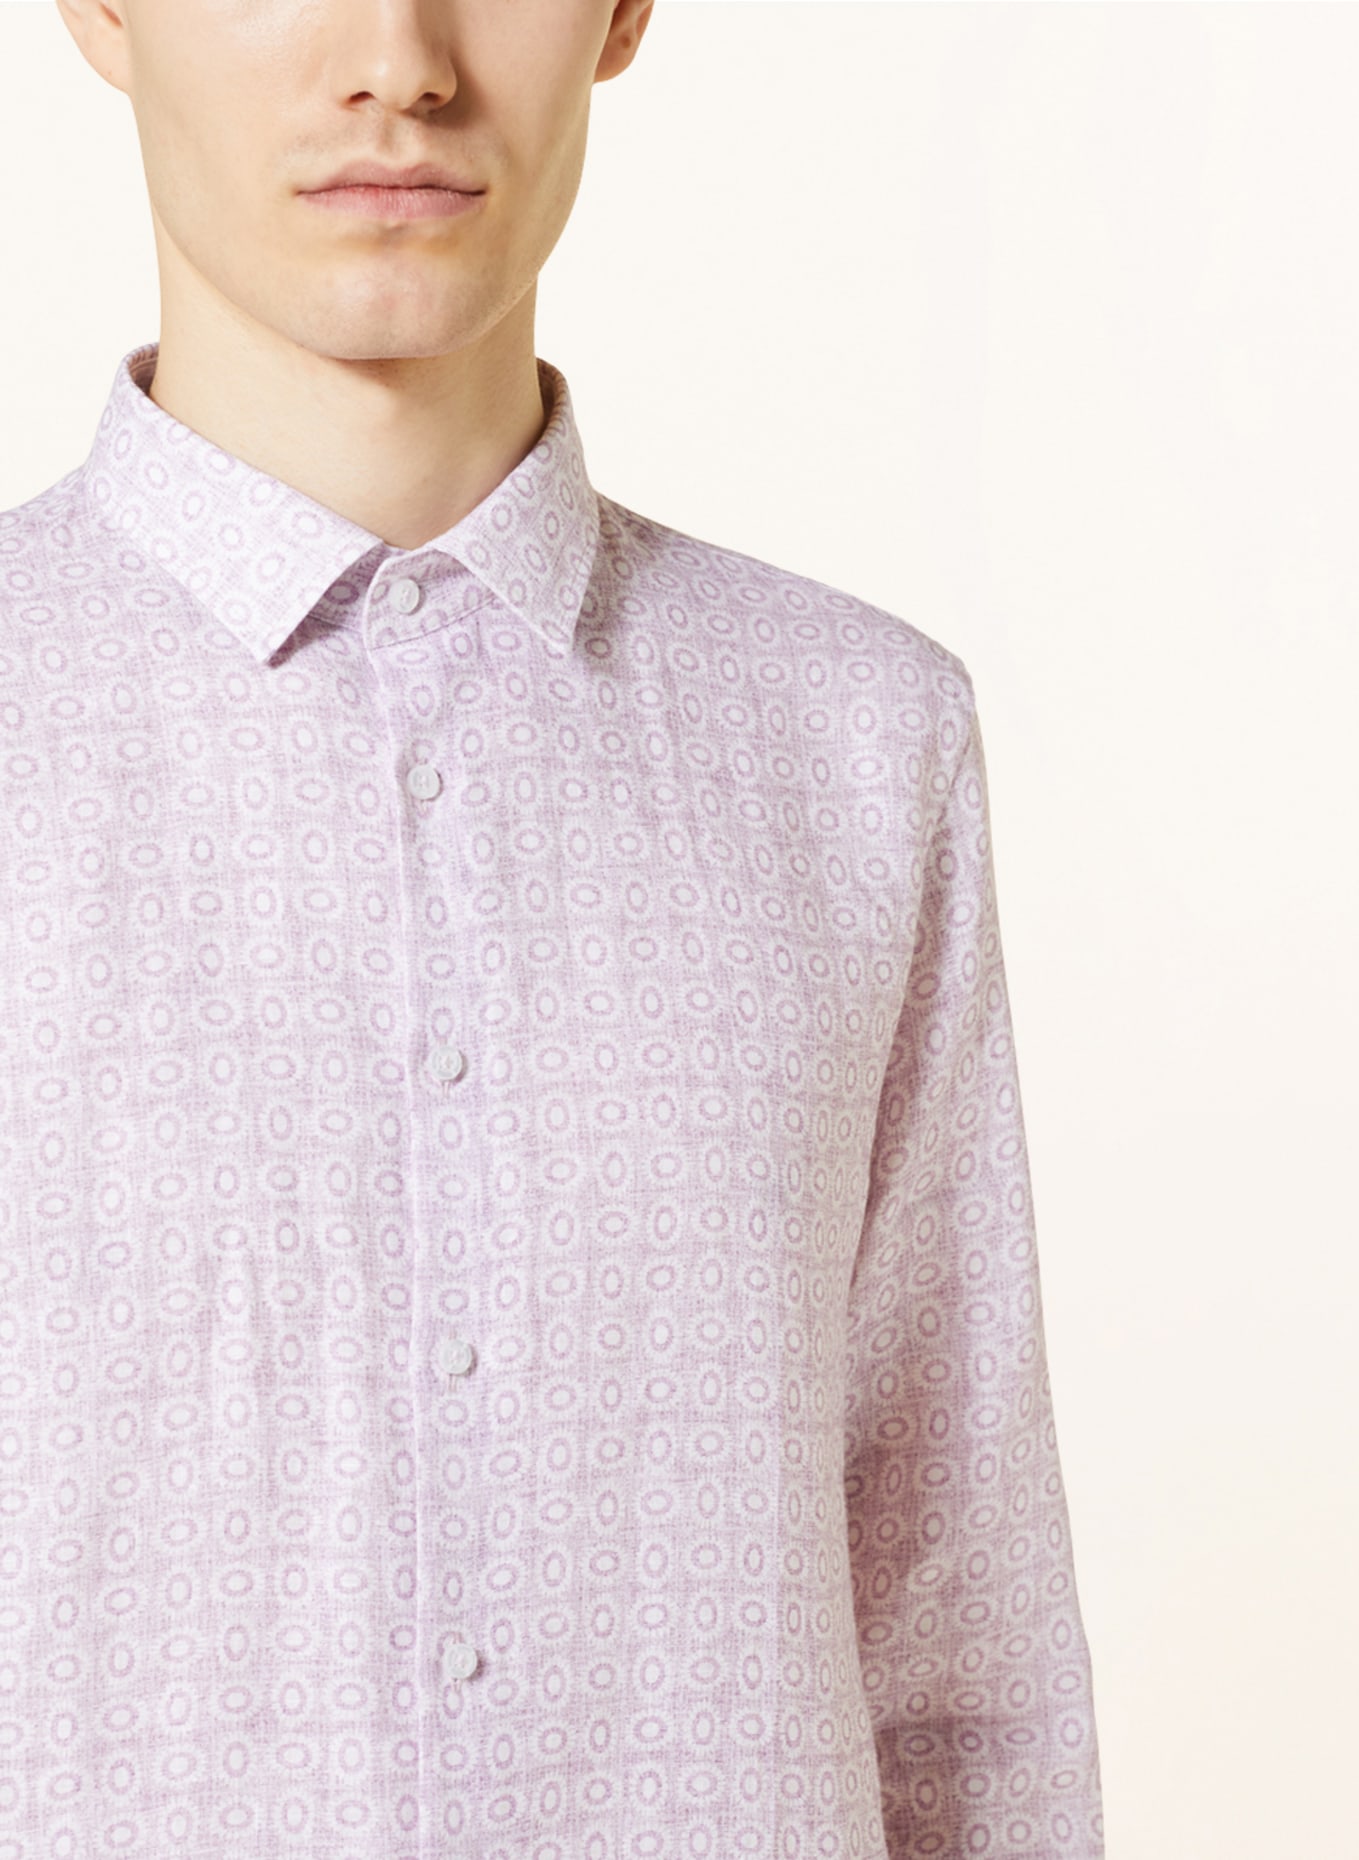 Q1 Manufaktur Linen shirt extra slim fit, Color: LIGHT PURPLE/ ECRU (Image 4)